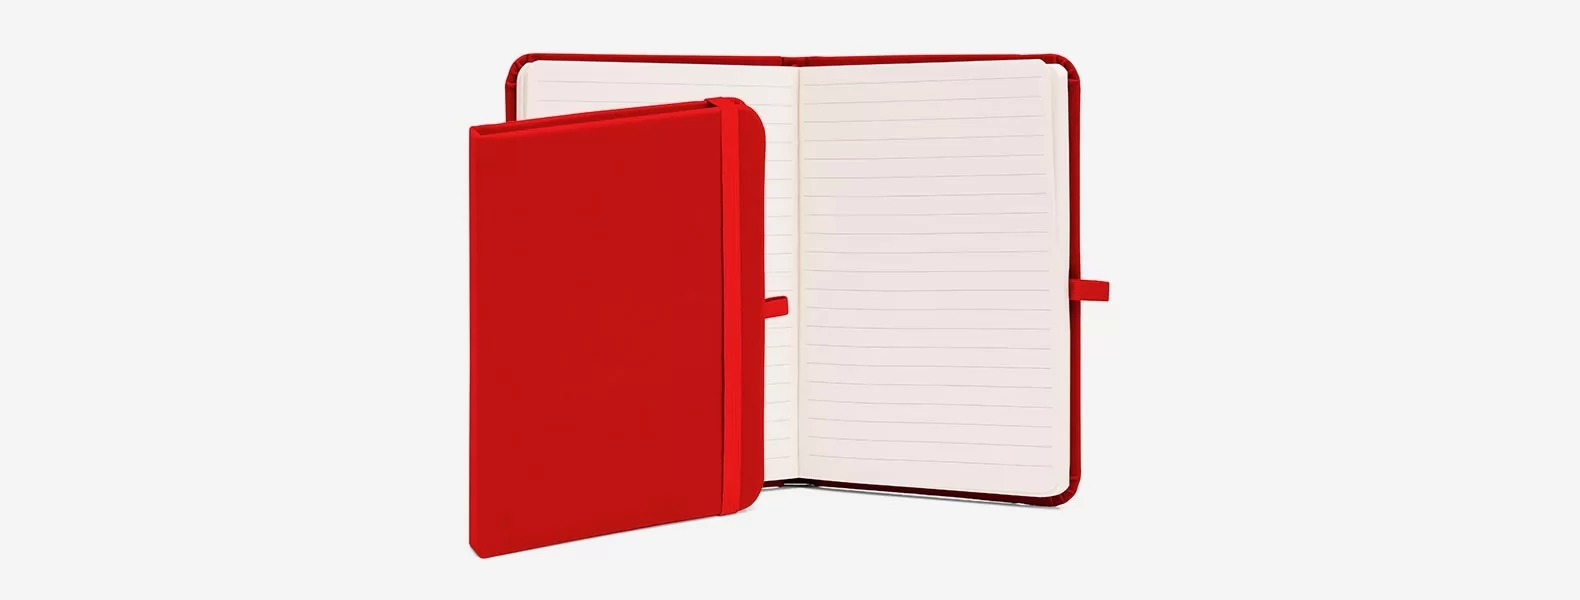 Caderneta P/ AnotaÇões C/ Pauta 17x12 Cm - Vermelha - 80 Folhas